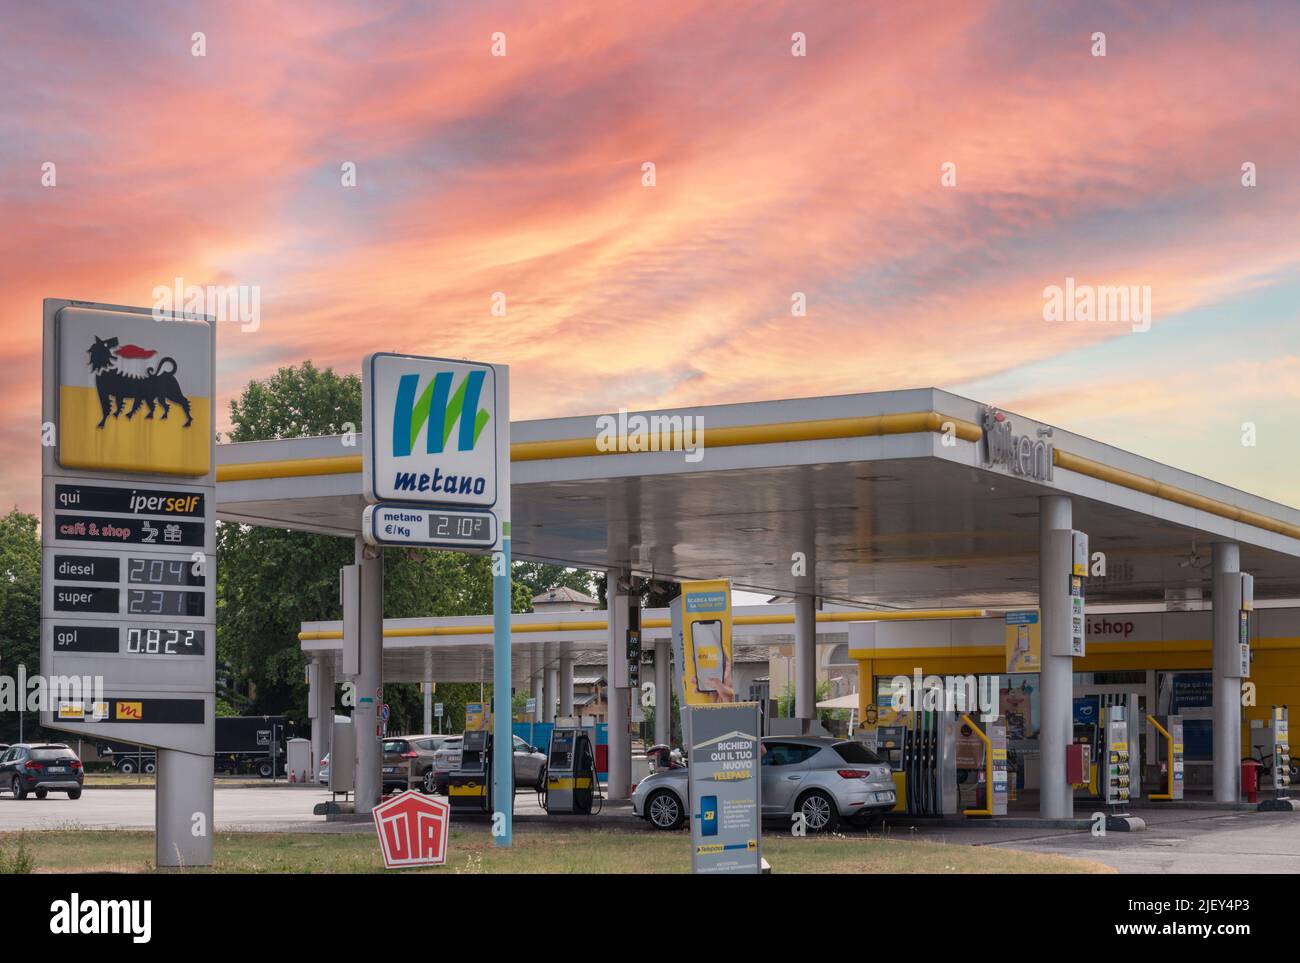 Cuneo, Italie, - 27 juin 2022: Logo ENI avec affichage du prix du carburant et panneau Metano (méthane) dans la station-service Eni, c'est une compagnie pétrolière italienne mondew Banque D'Images